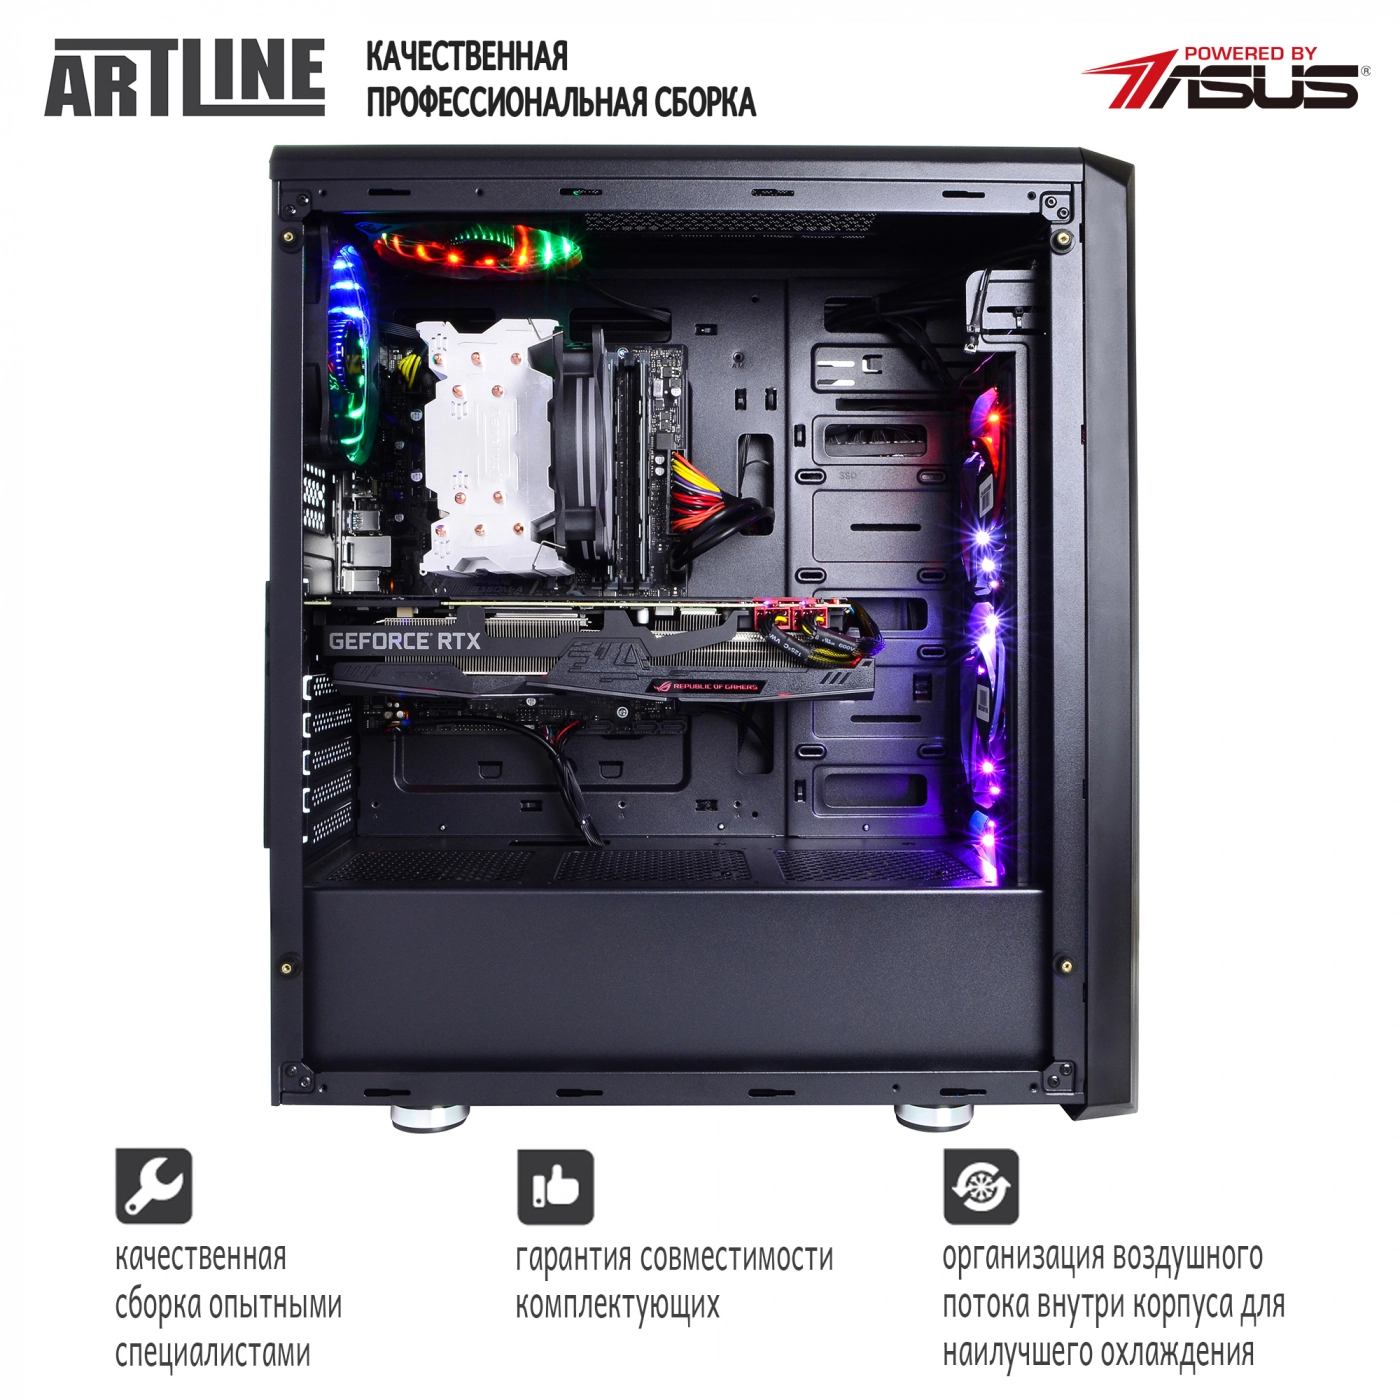 Купить Компьютер ARTLINE Gaming X99v20 - фото 6